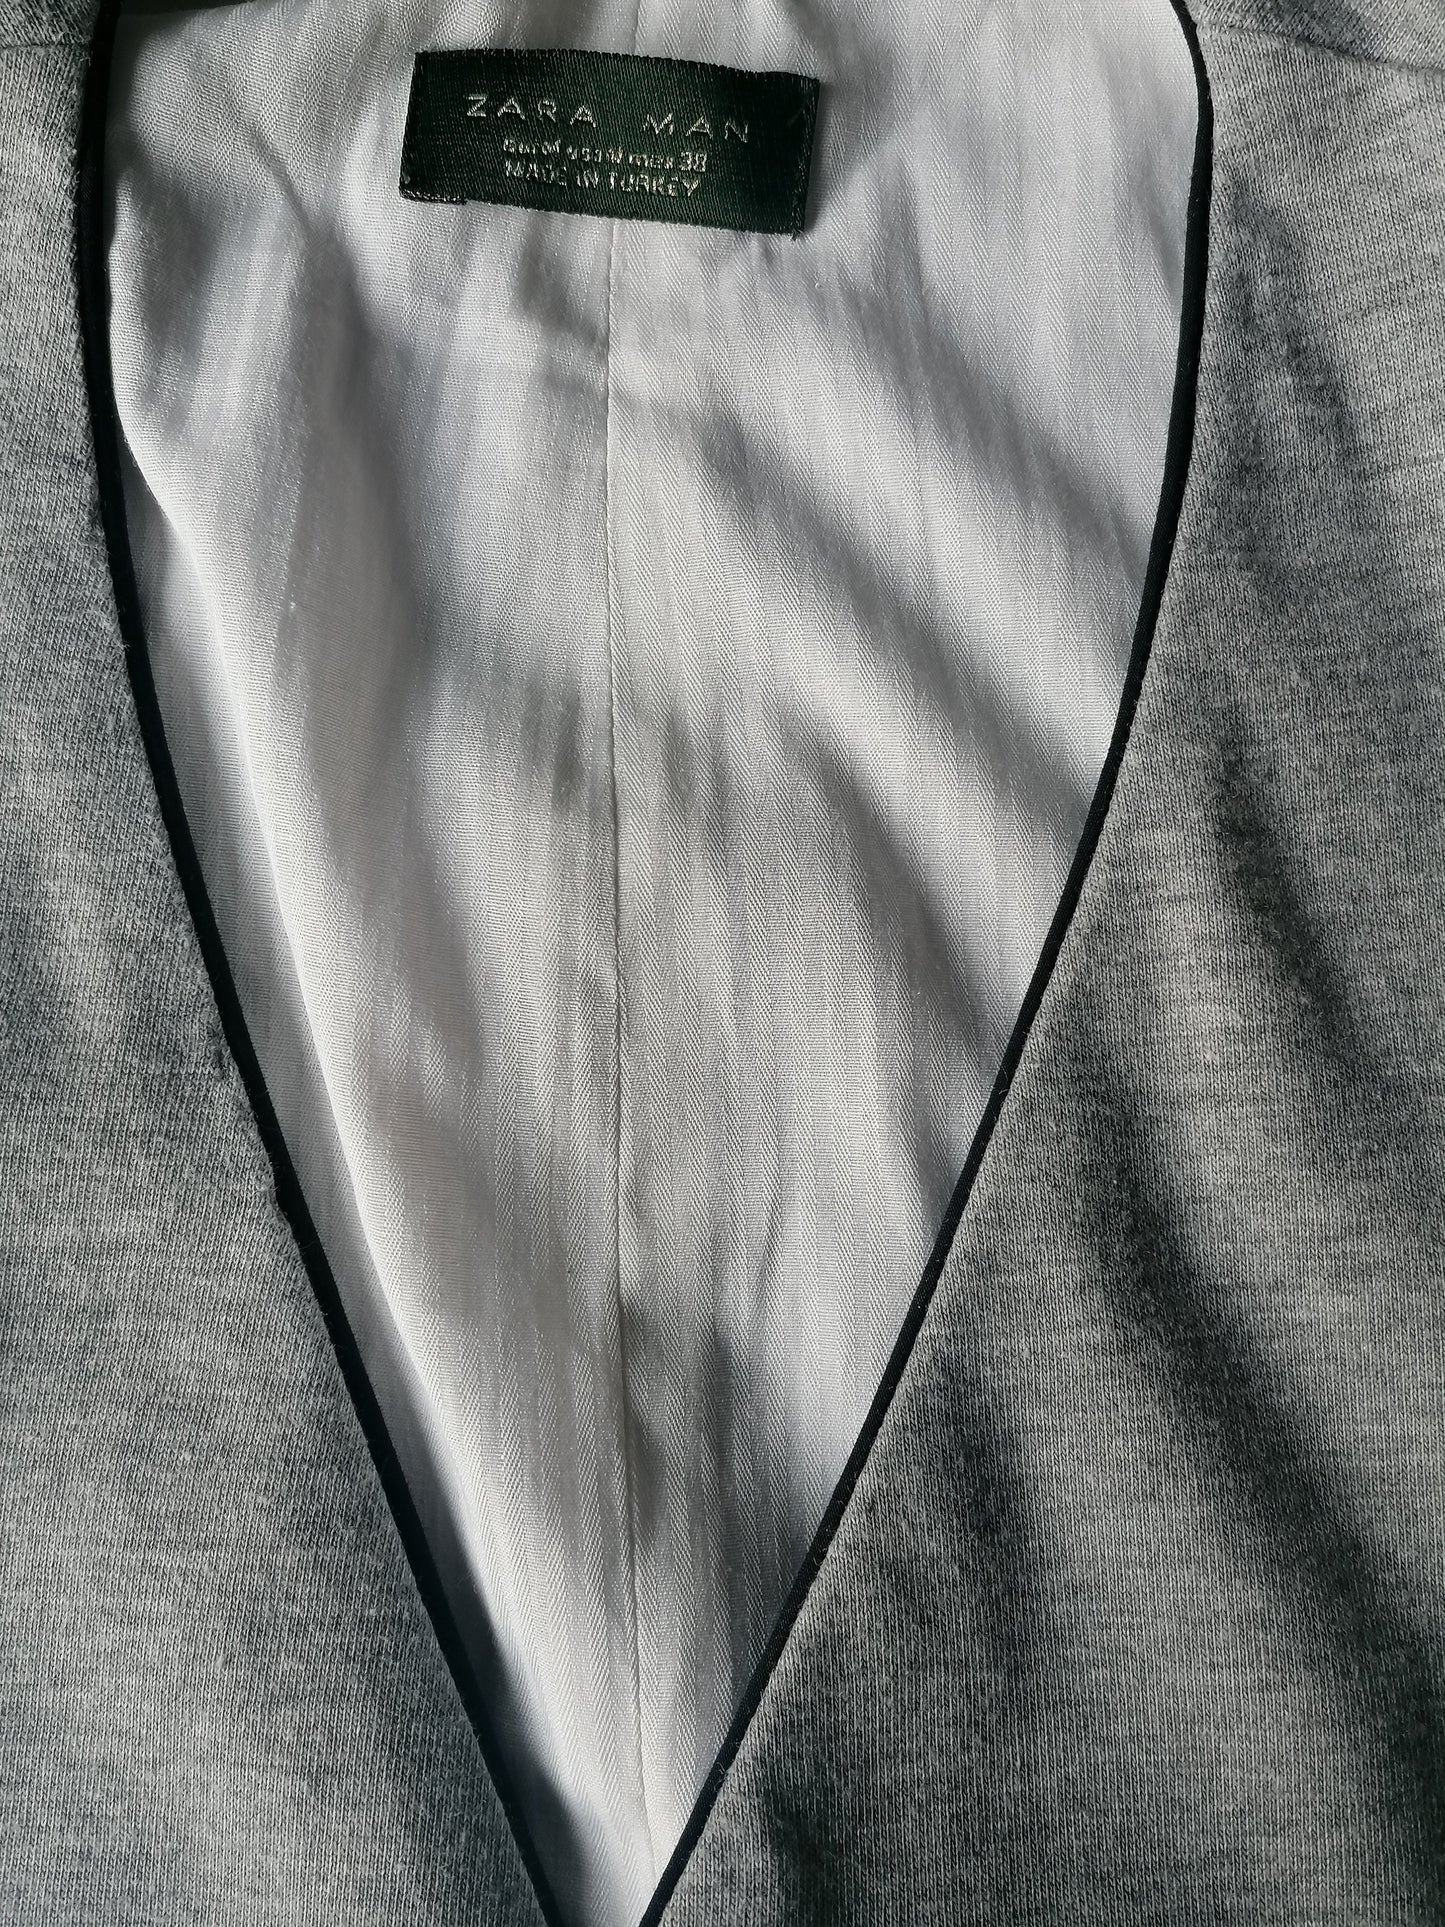 Zara man casual waistcoat. Gray mixed. Size M.